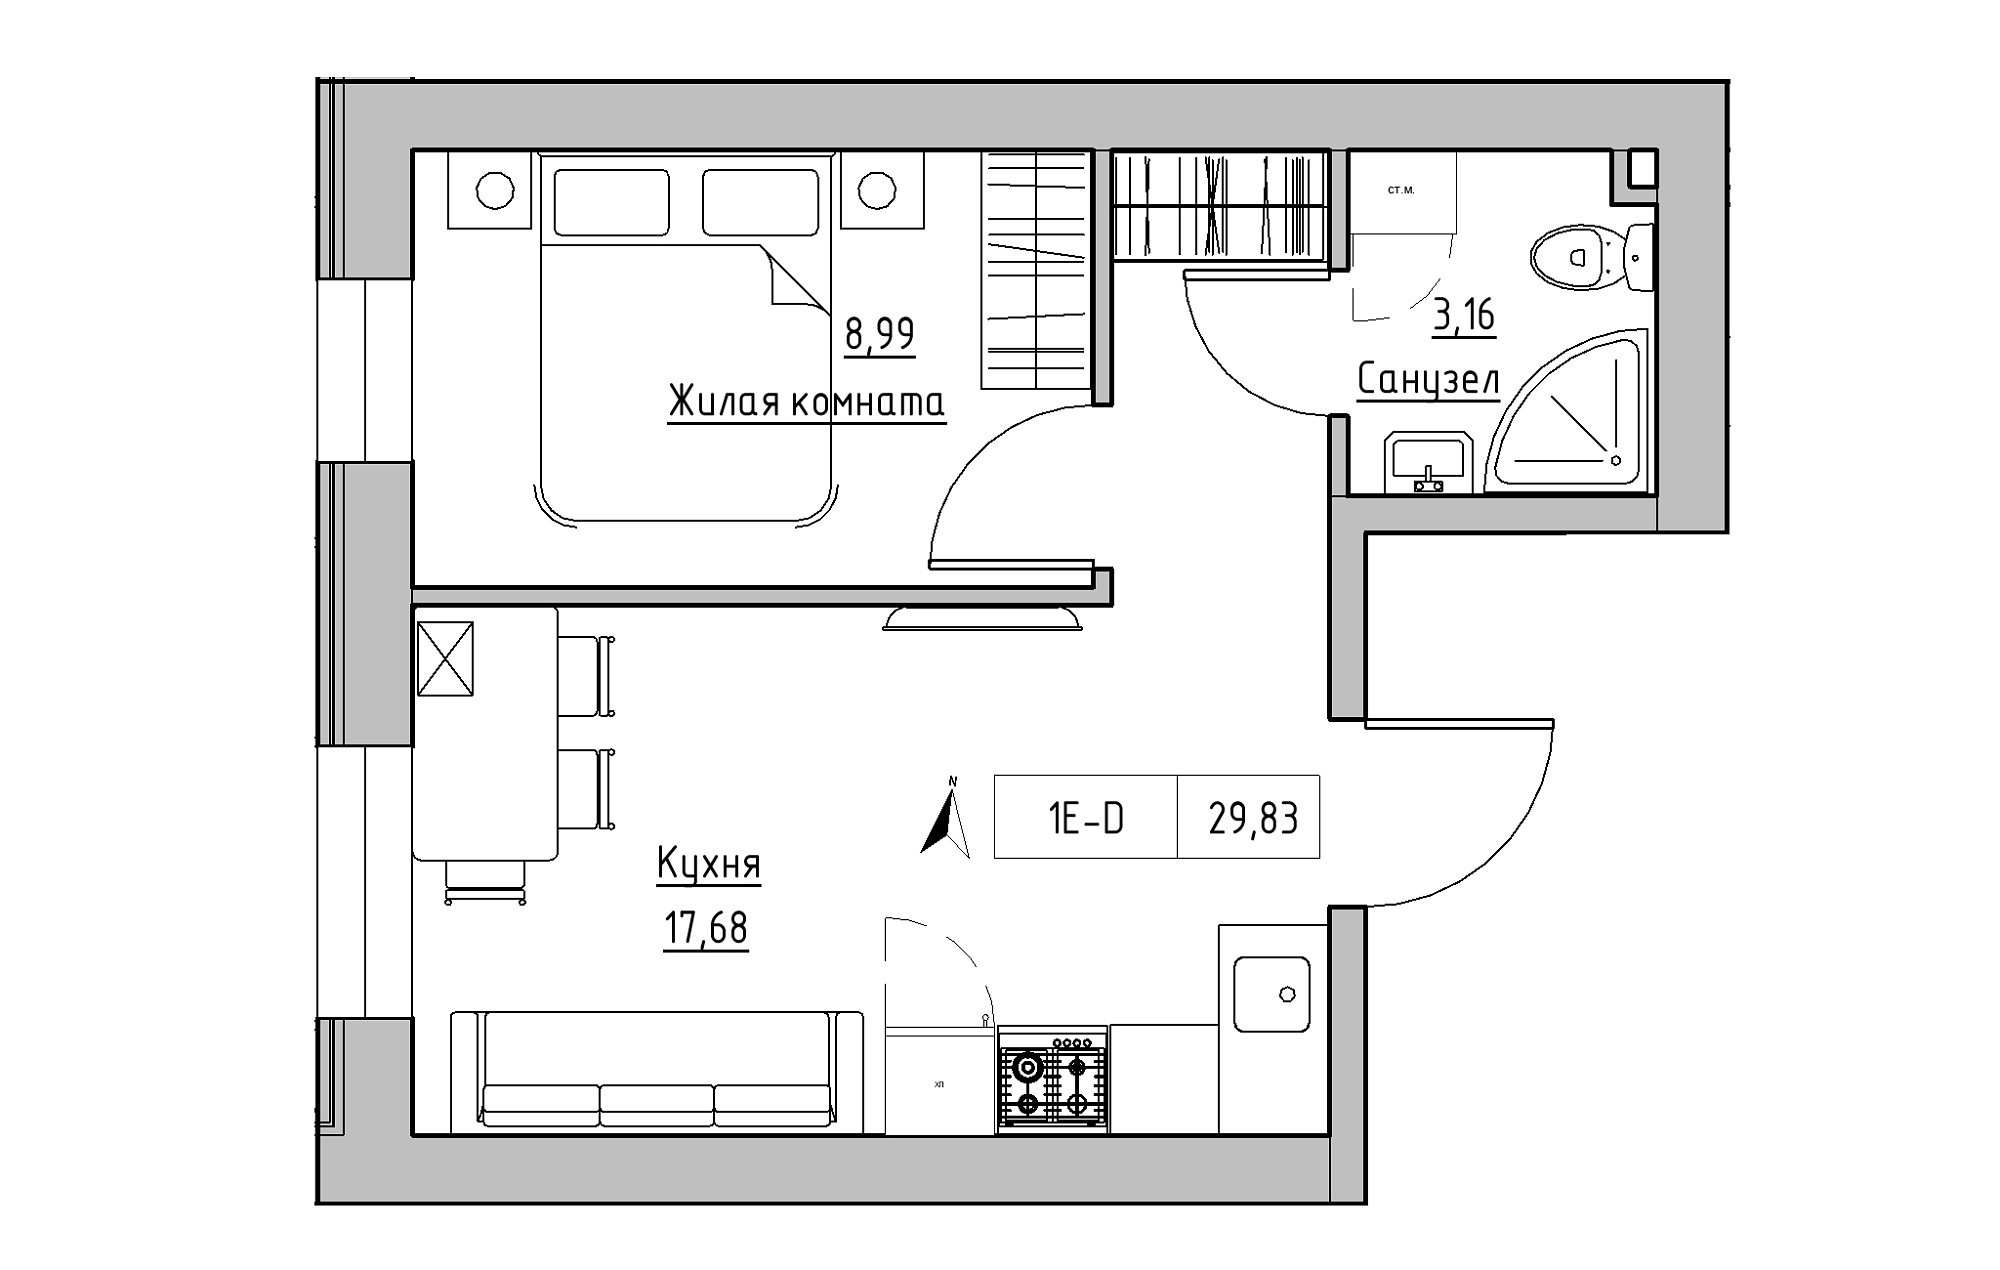 Планування 1-к квартира площею 29.83м2, KS-019-01/0003.